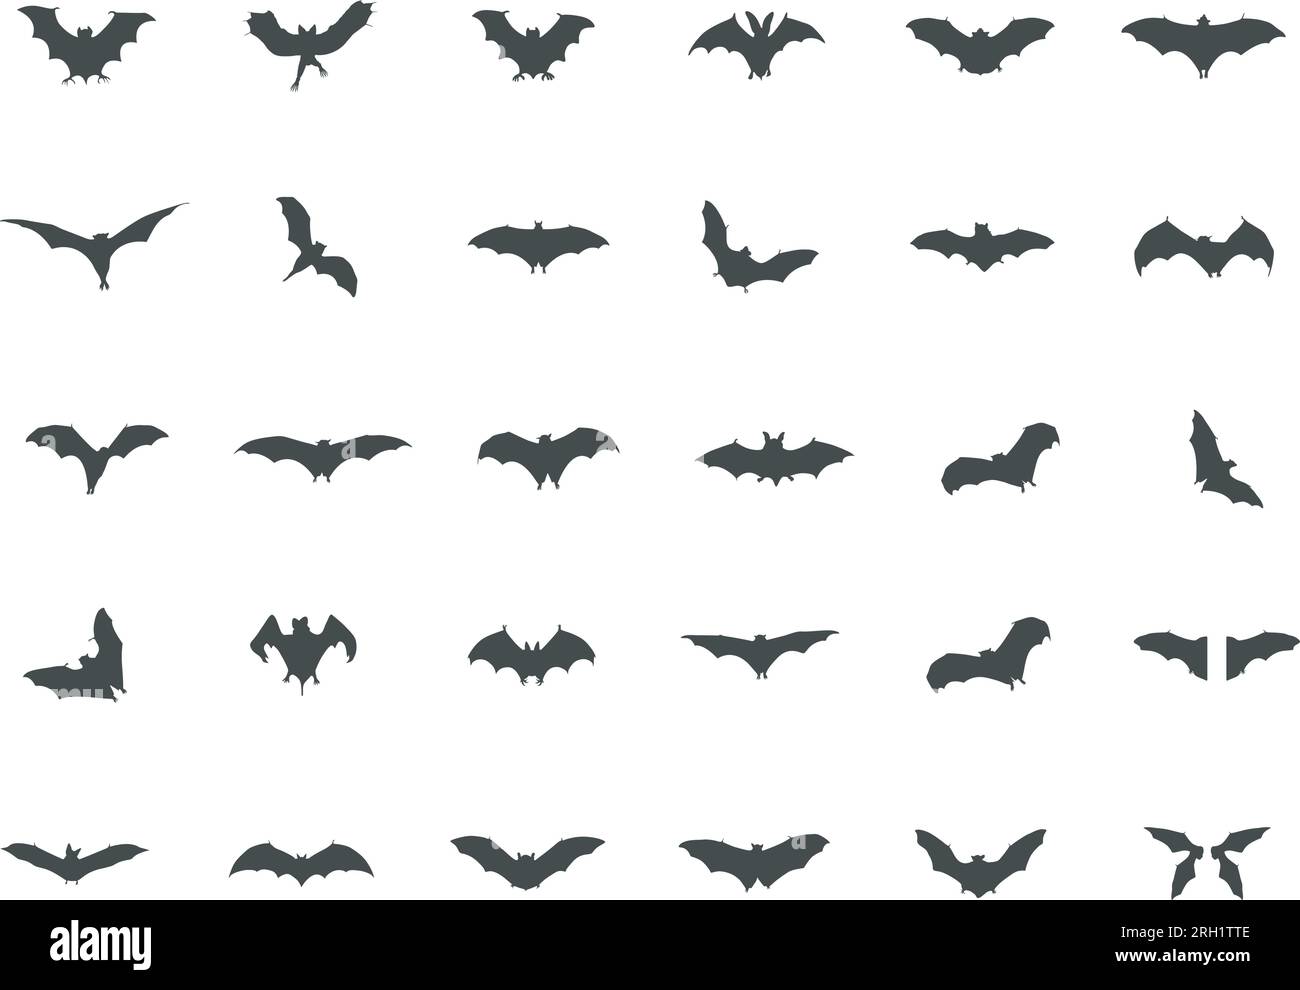 Sagome BAT, icona Bats, silhouette pistrelli Halloween, Bats SVG, silhouette pipistrelli spaventosi, vettore BAT, Bats Illustrazione Vettoriale